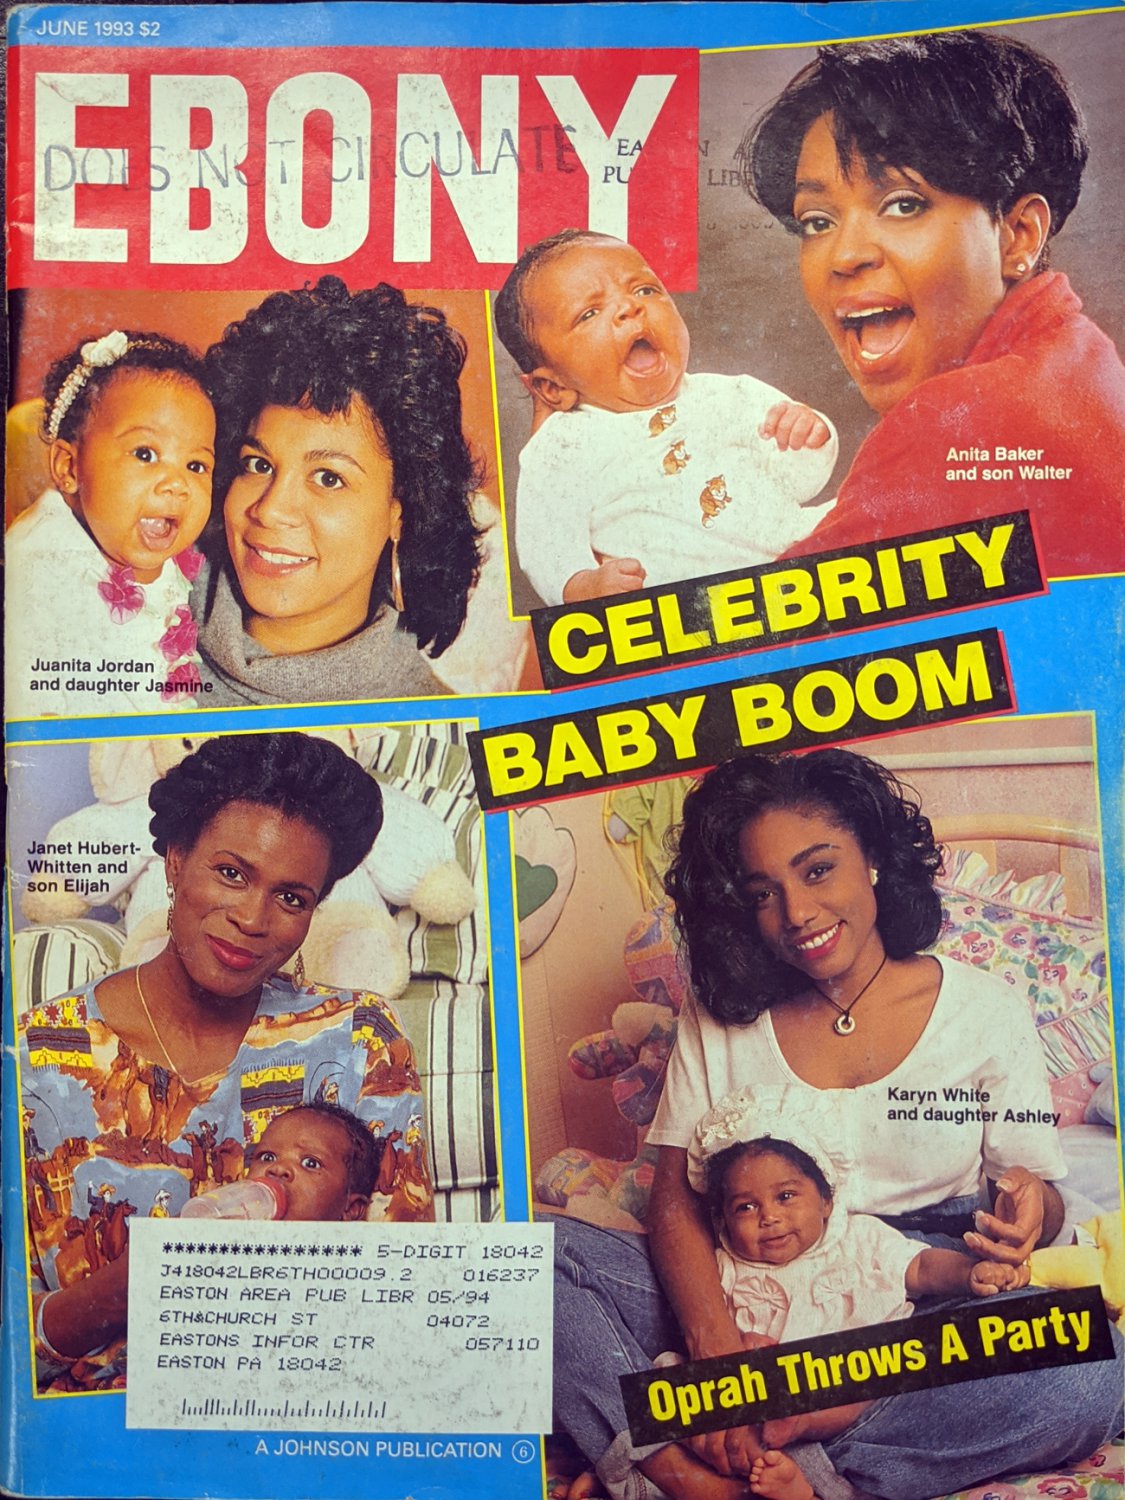 June 1993 ebony magazine